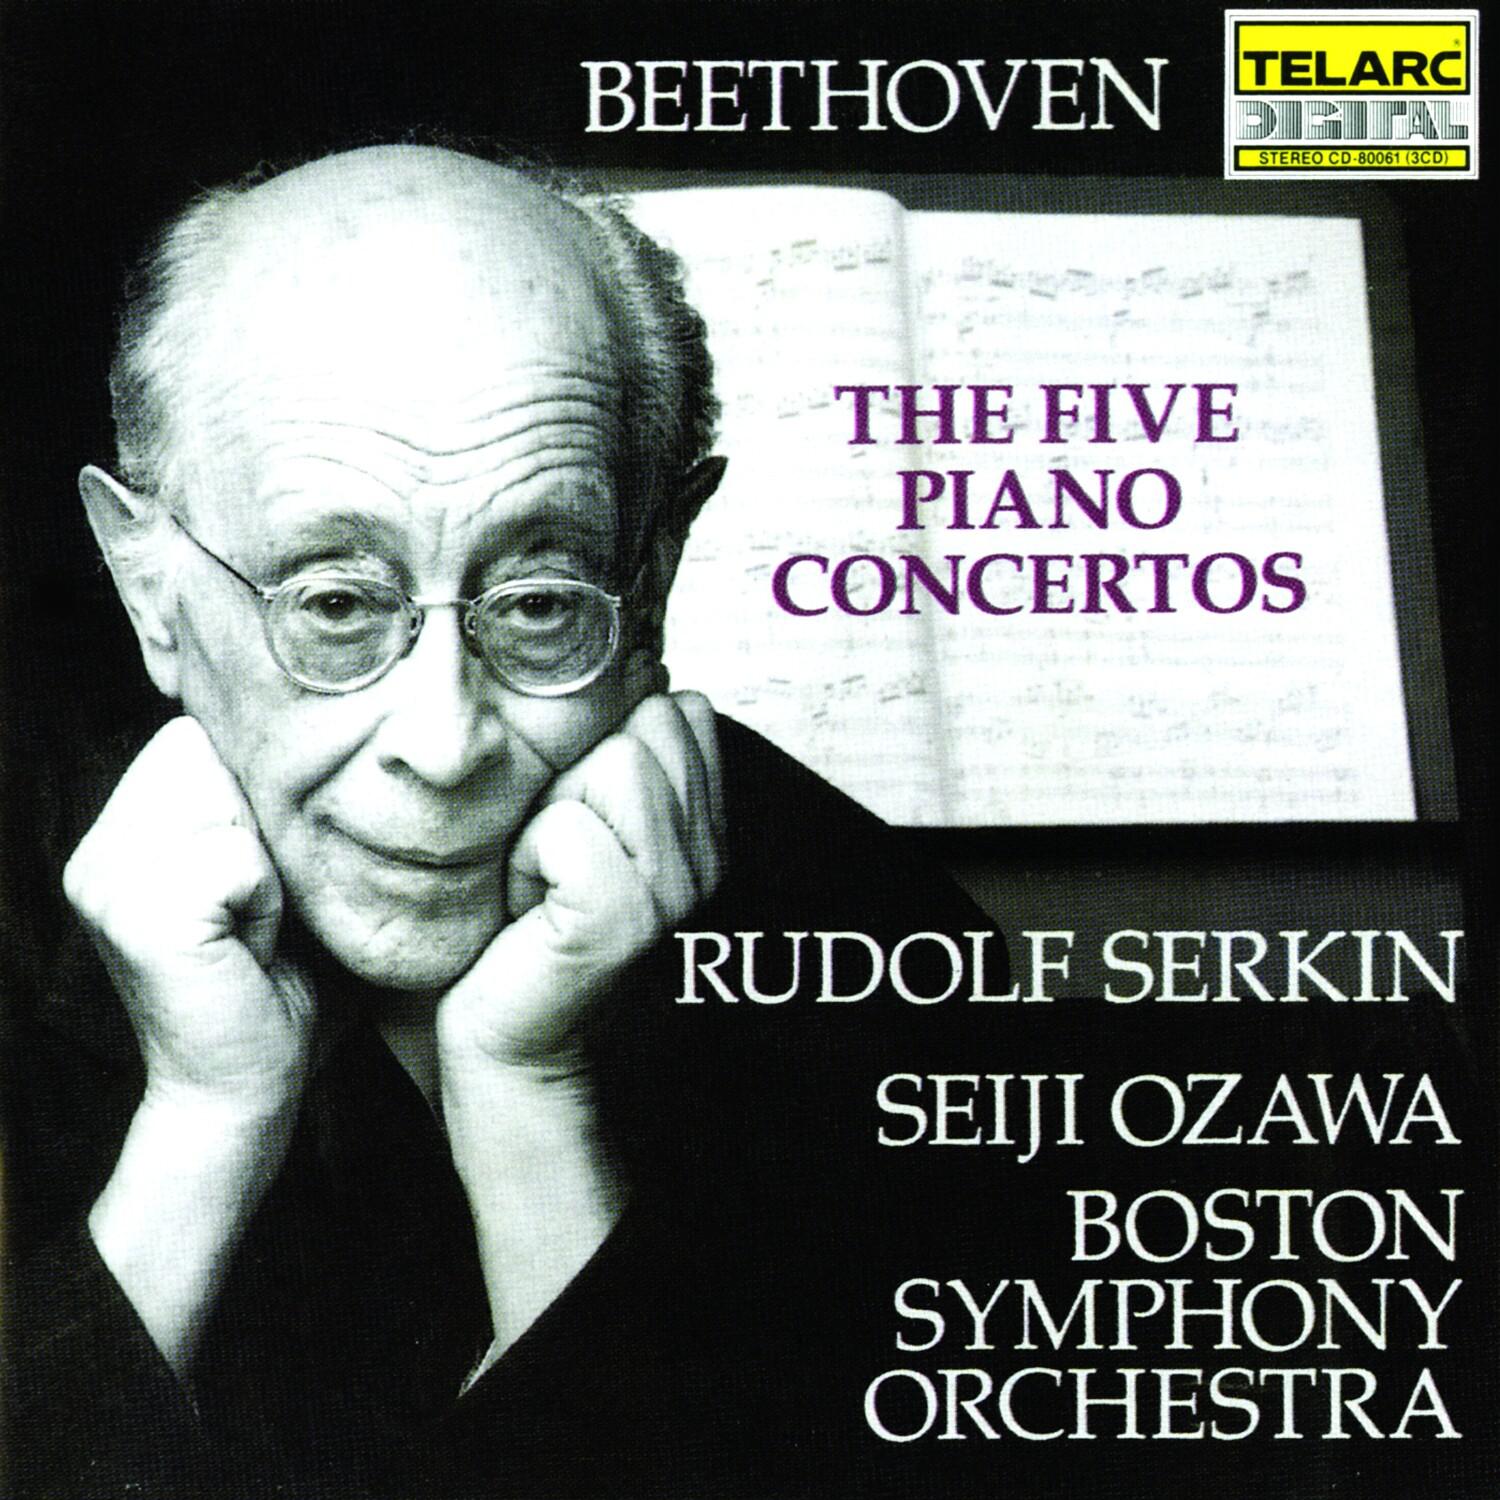 Concerto No. 4 in G, Op. 58: I. Allegro moderato